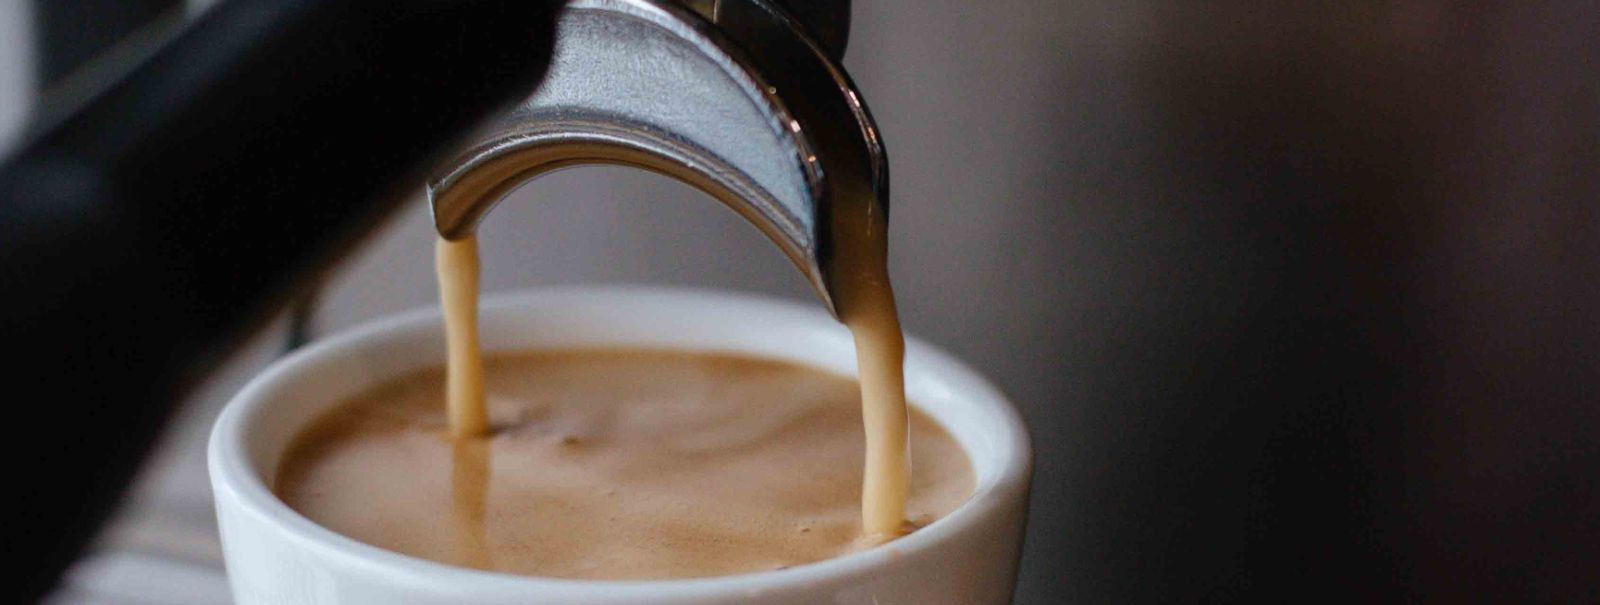 Kohvisõpradele ja professionaalidele on kohvimasin kohvielamuse südameks. Ent selleks, et see masin alati tipptasemel töötaks ja kohvi maitse oleks suurepärane,